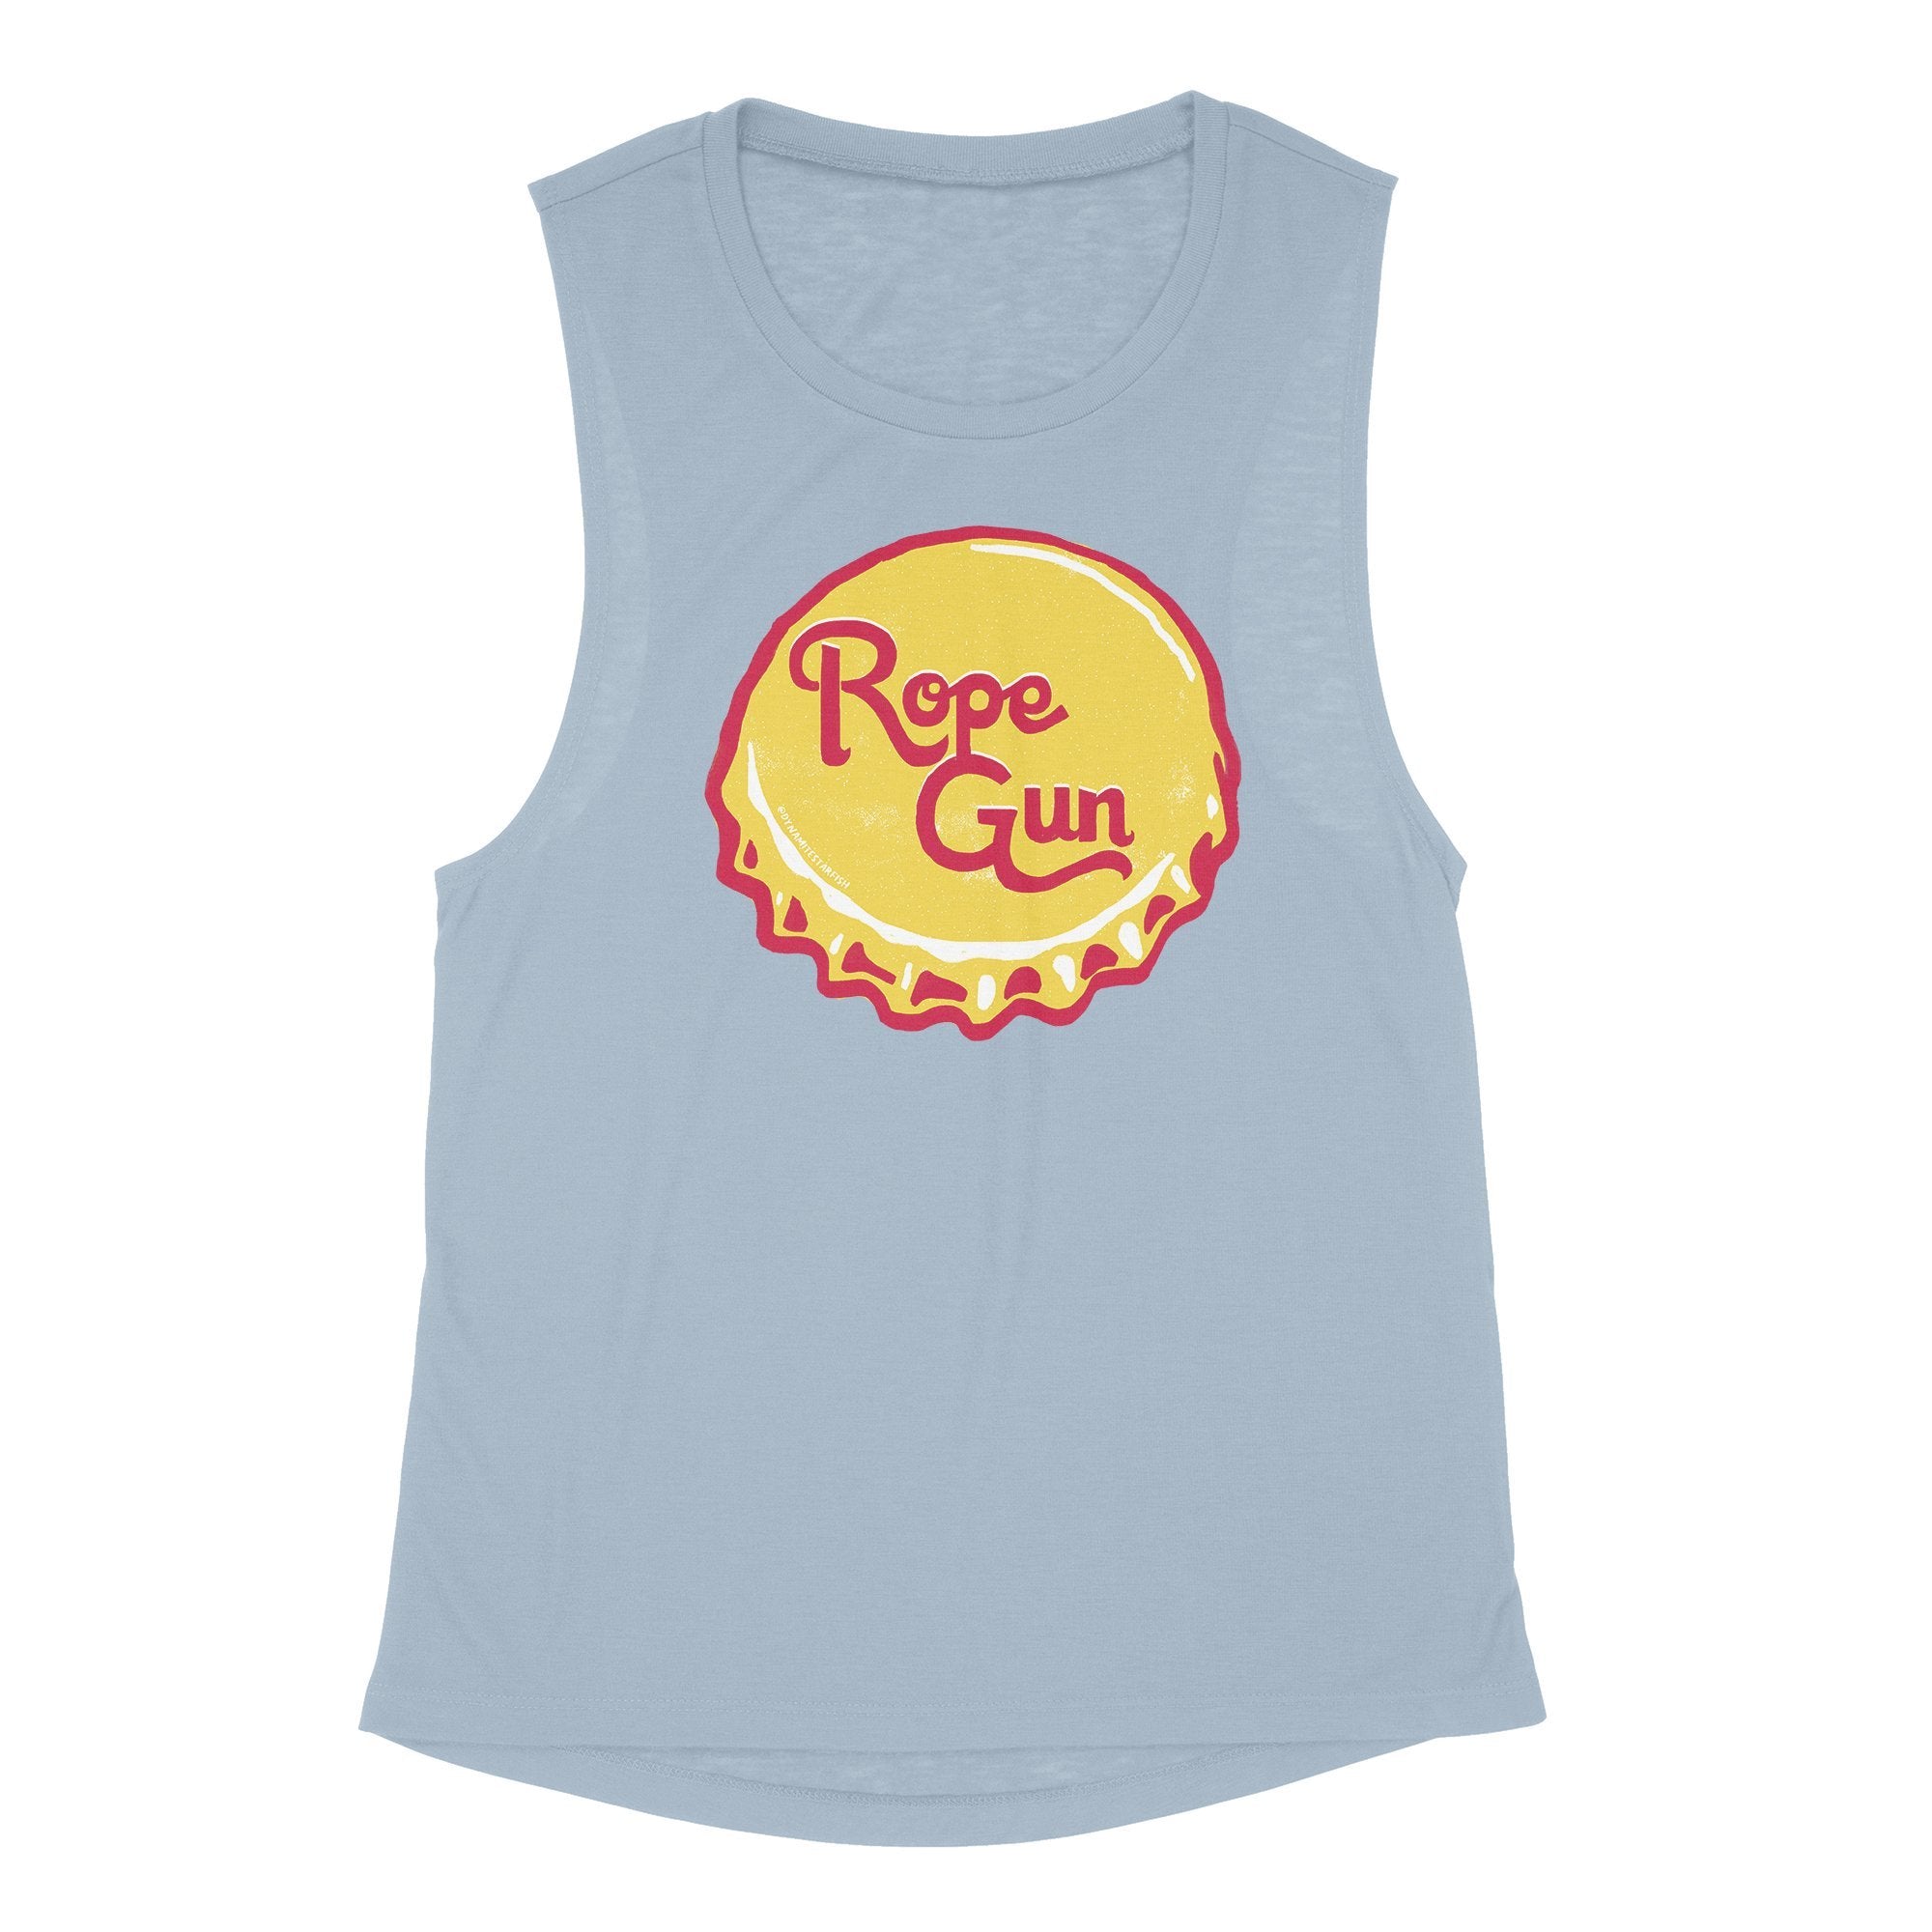 rock climbing t-shirts gifts - Women's Tank Tops-Rope Gun — Women's Muscle Tank - Dynamite Starfish - gift for climber